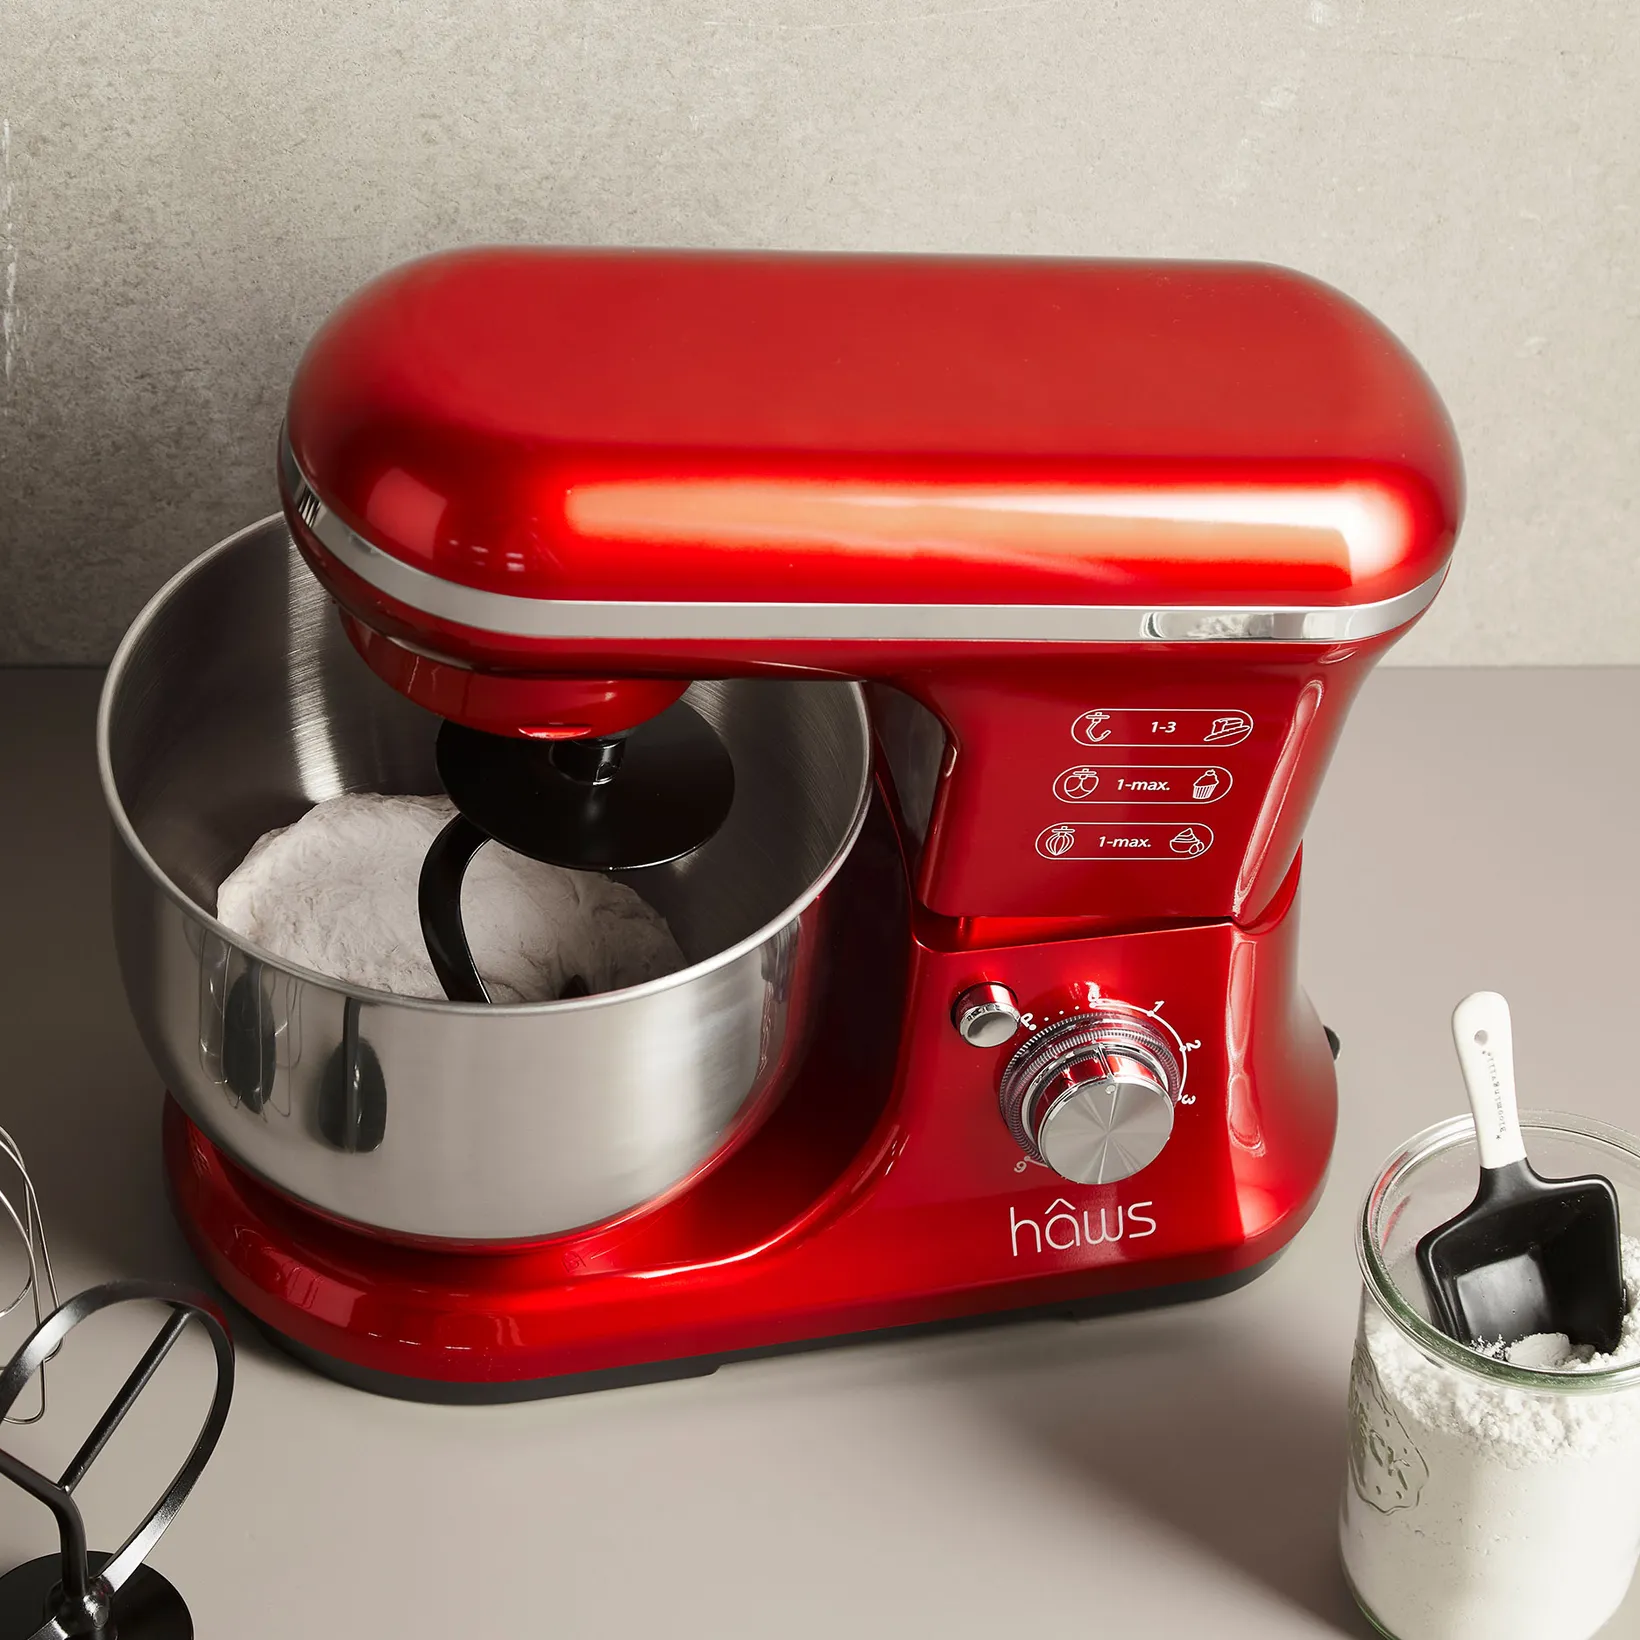 Køb Livø køkkenmaskine 5 rød lige her! | Lækker | Hurtig fragt!